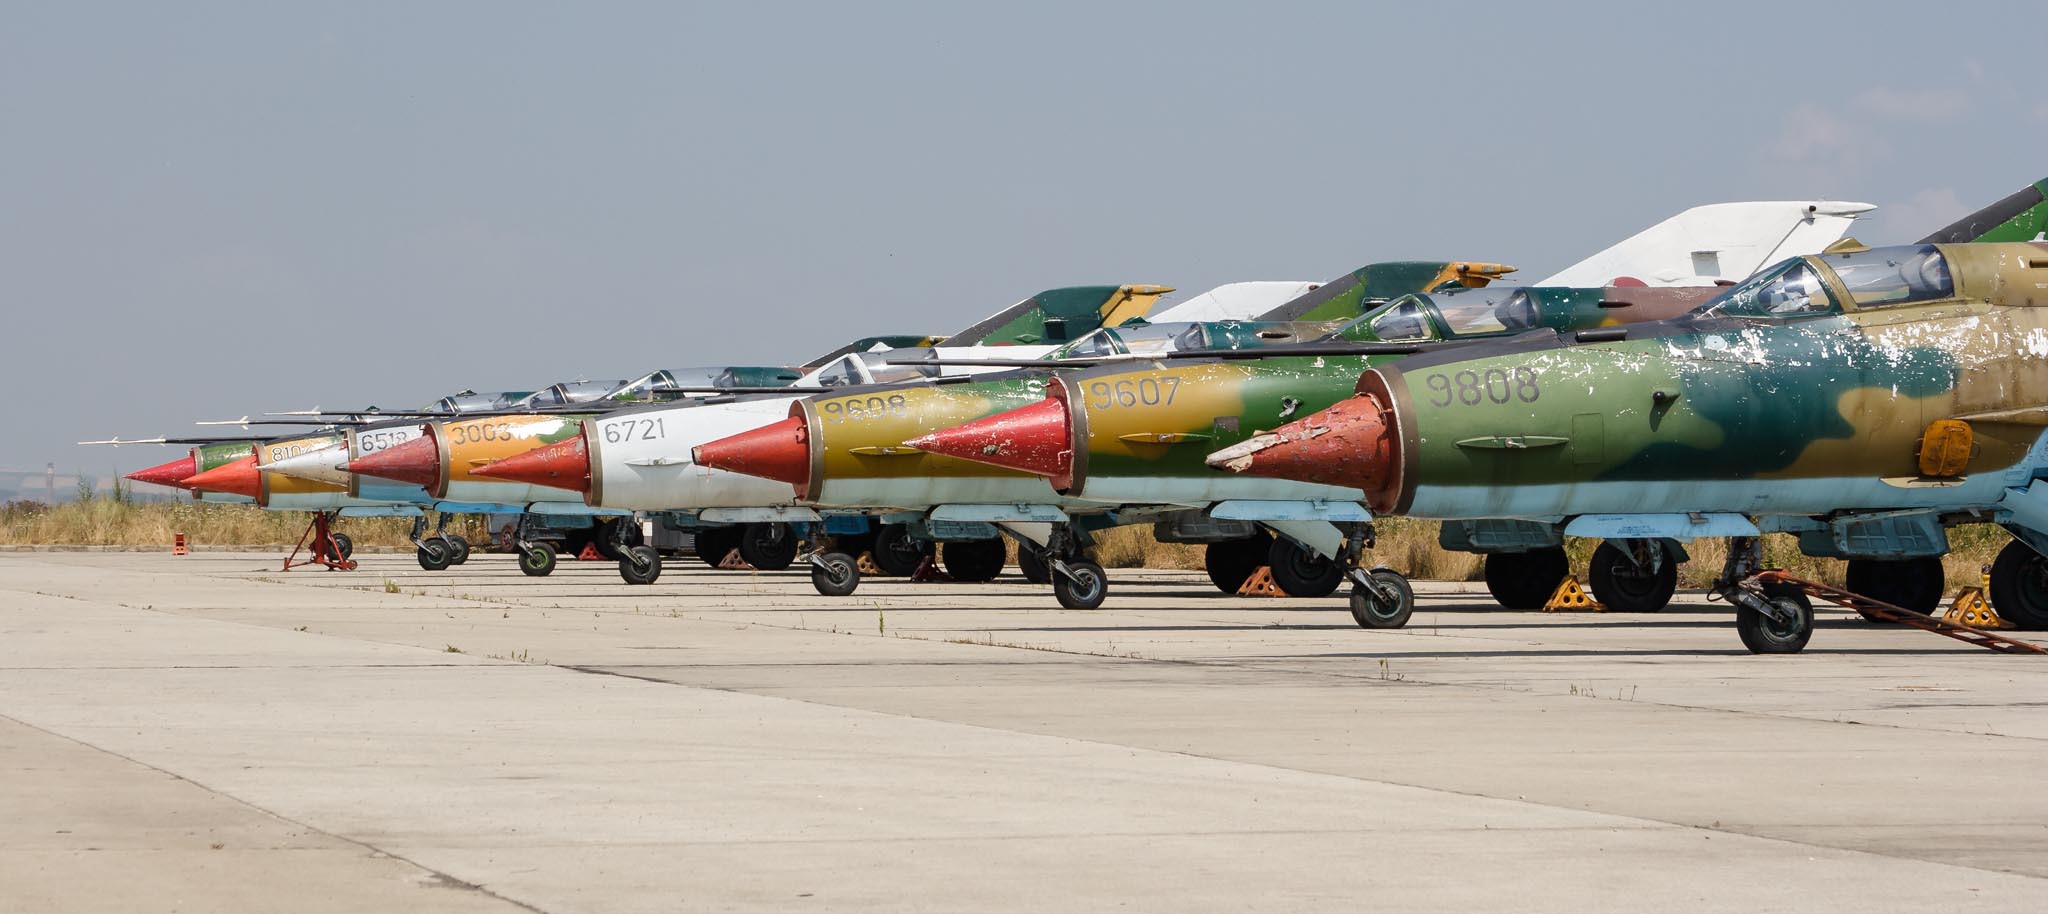 Fortele Aeriene Române MiG-21